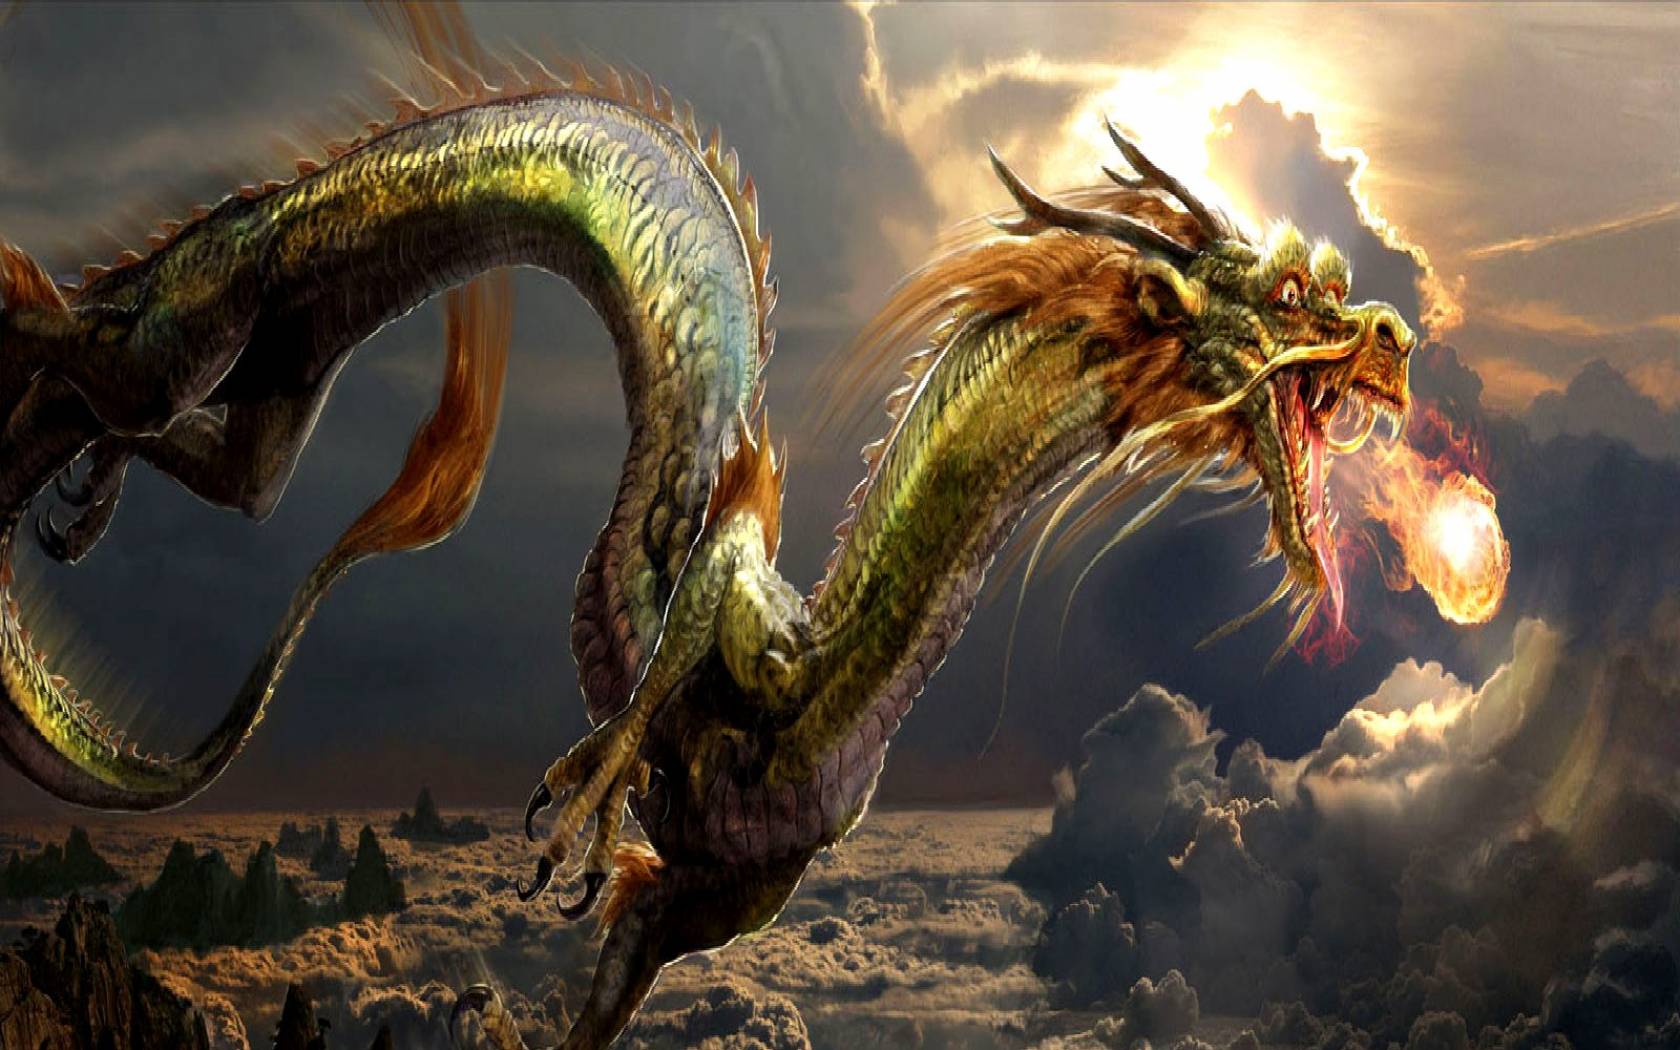 dragoni wallpaper hd,drago,cg artwork,mitologia,personaggio fittizio,creatura mitica